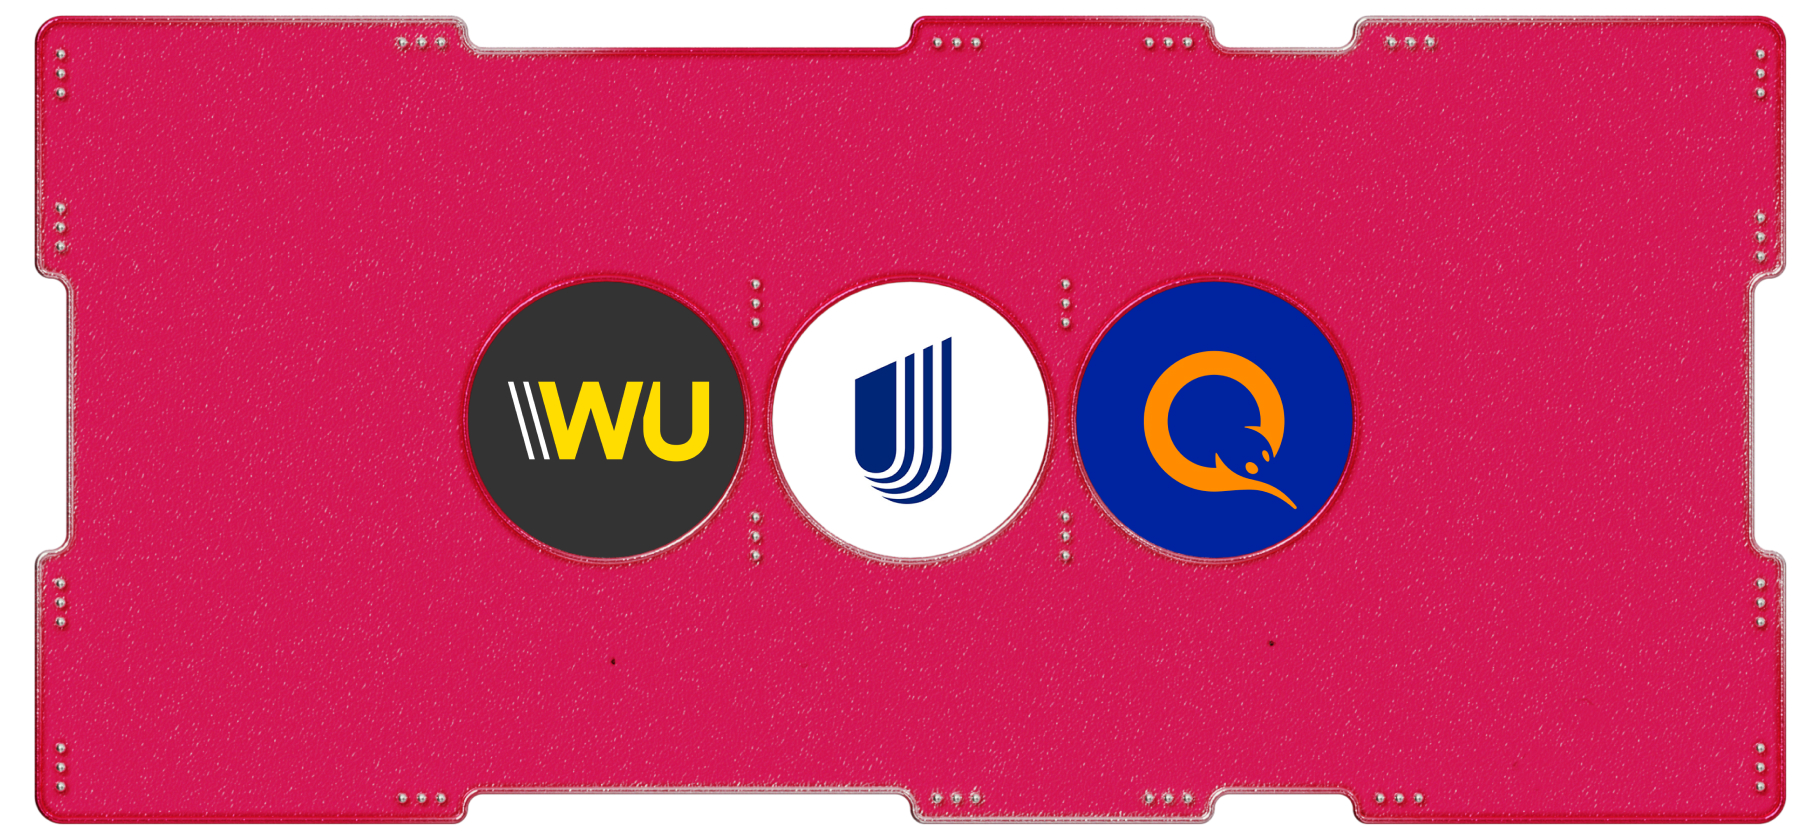 Календарь инвестора: Western Union, UnitedHealth и QIWI заплатят дивиденды